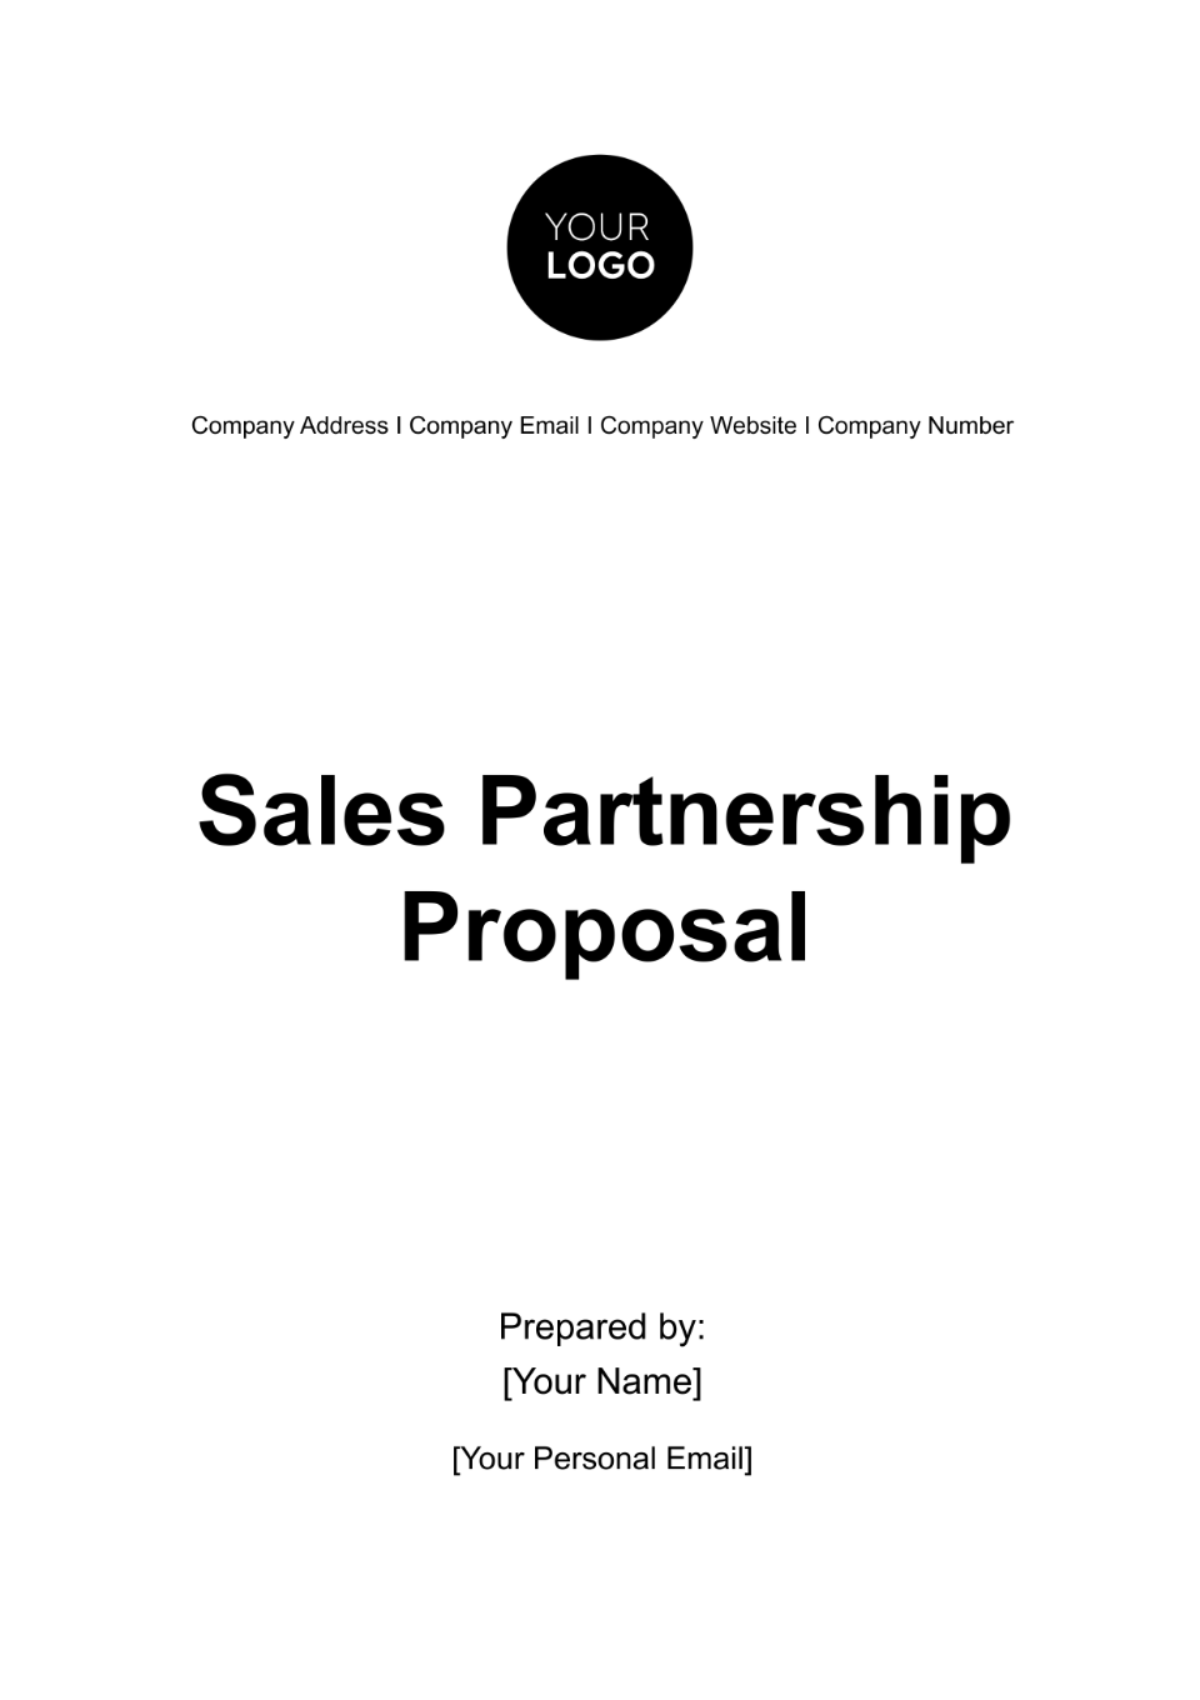 Sales Partnership Proposal Template